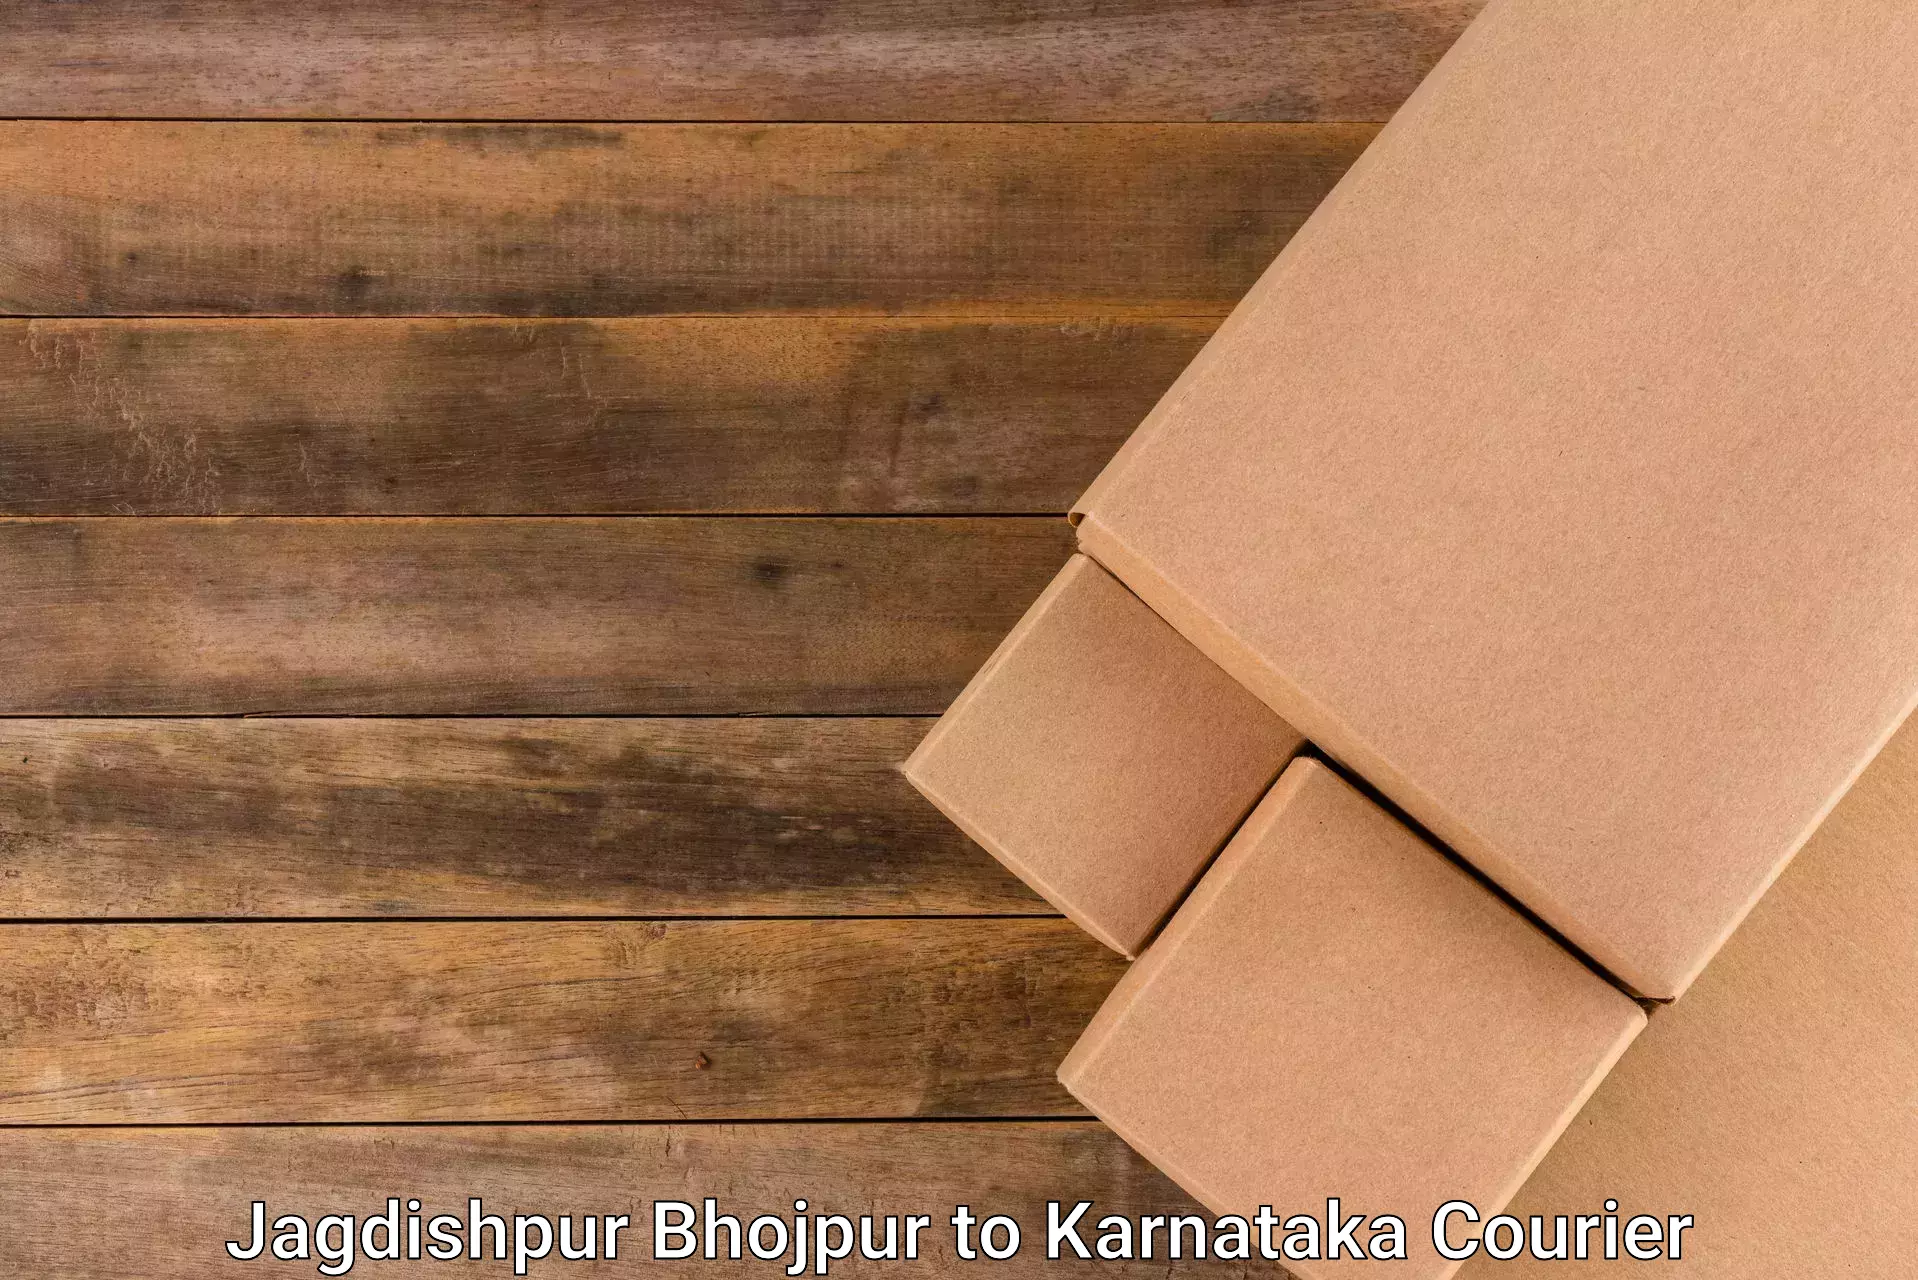 Efficient parcel service Jagdishpur Bhojpur to Kushalnagar